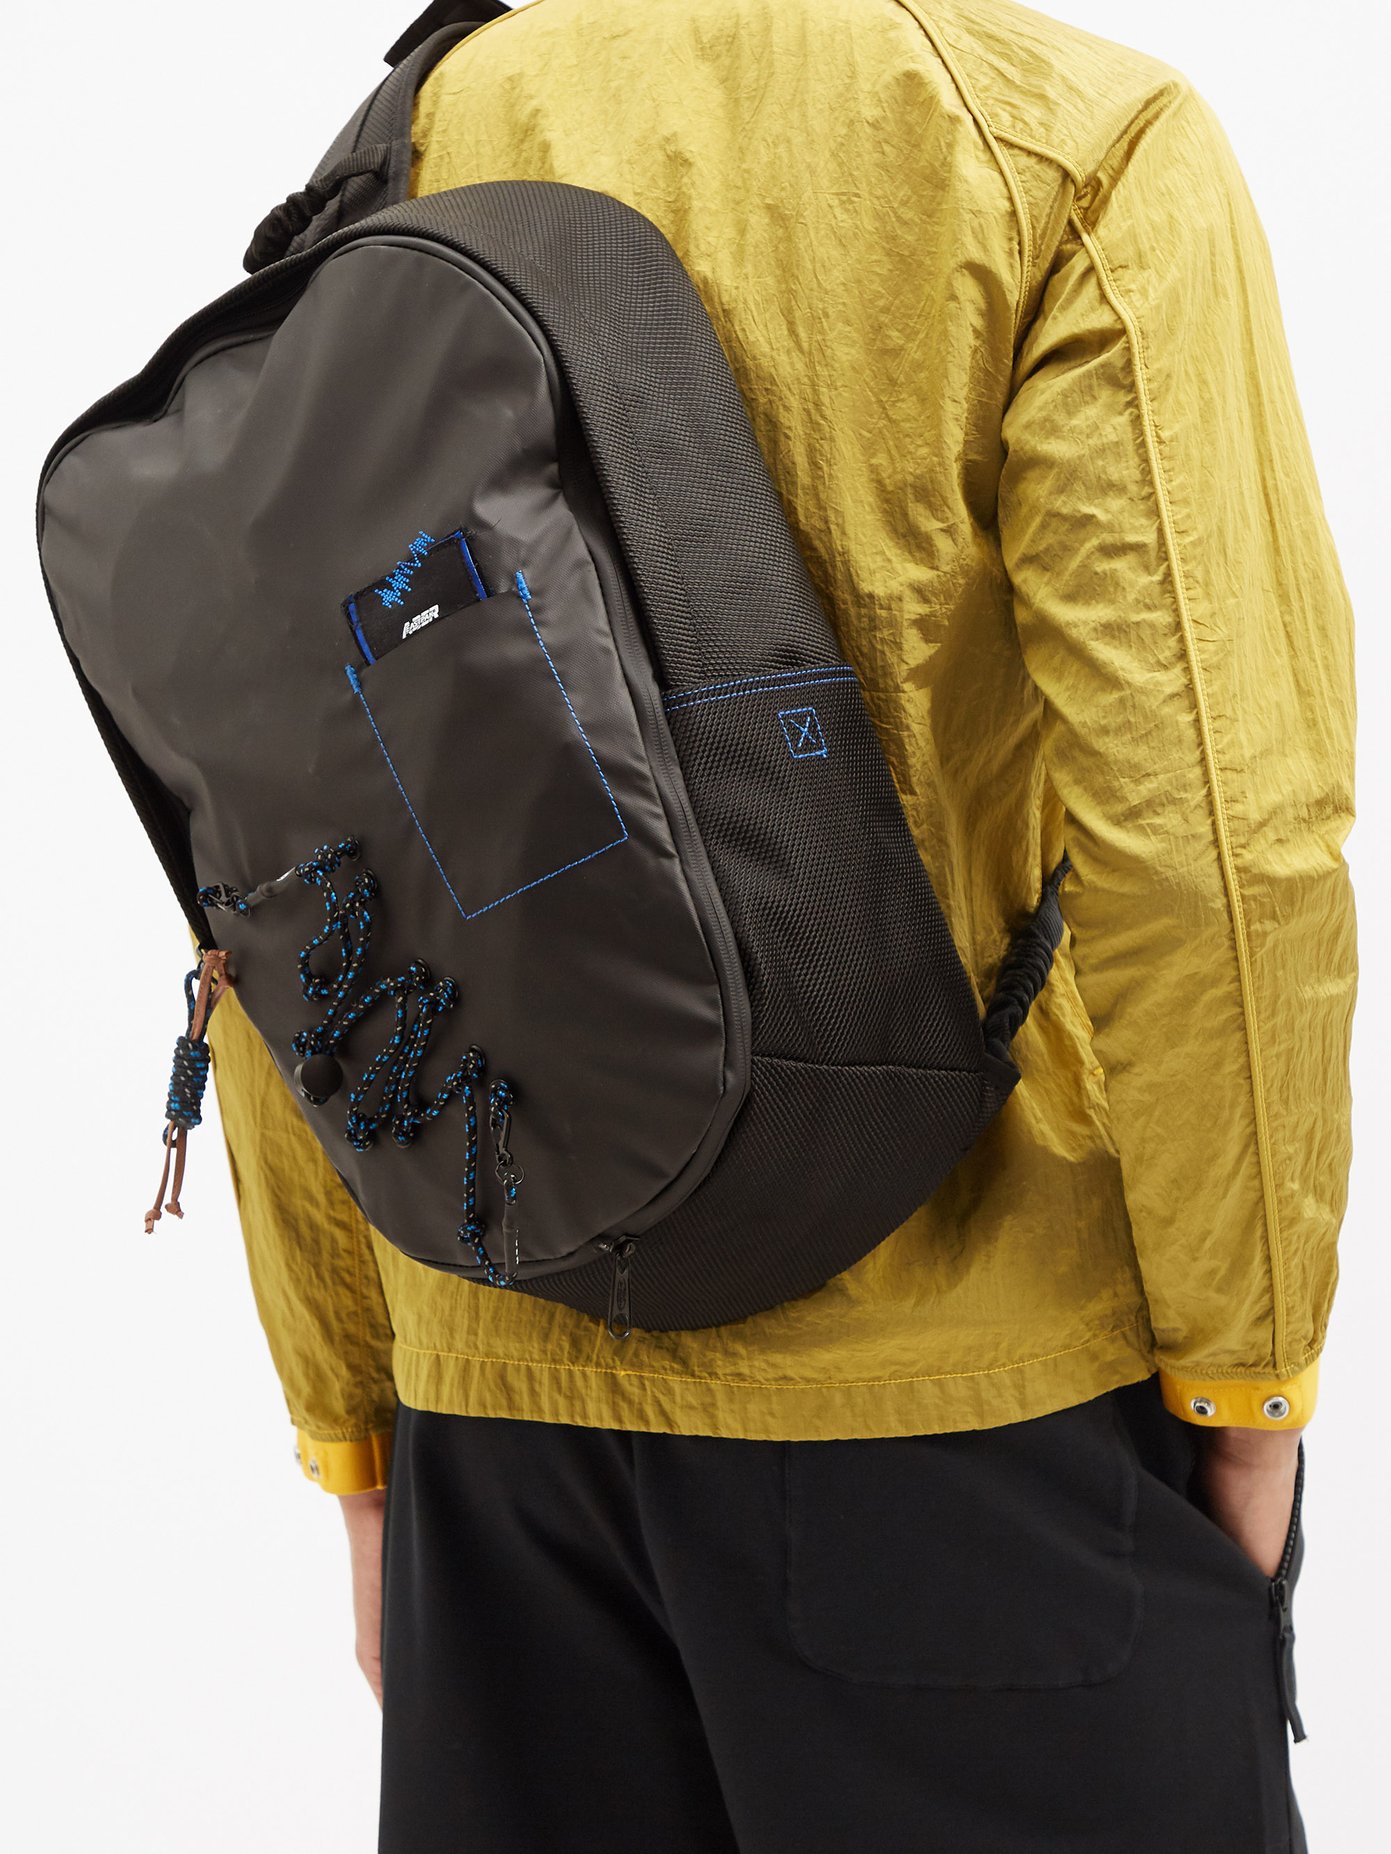 이스트팩 X 아더 에러 백팩 Eastpak X ADERERROR technical-shell one-shoulder backpack,Black